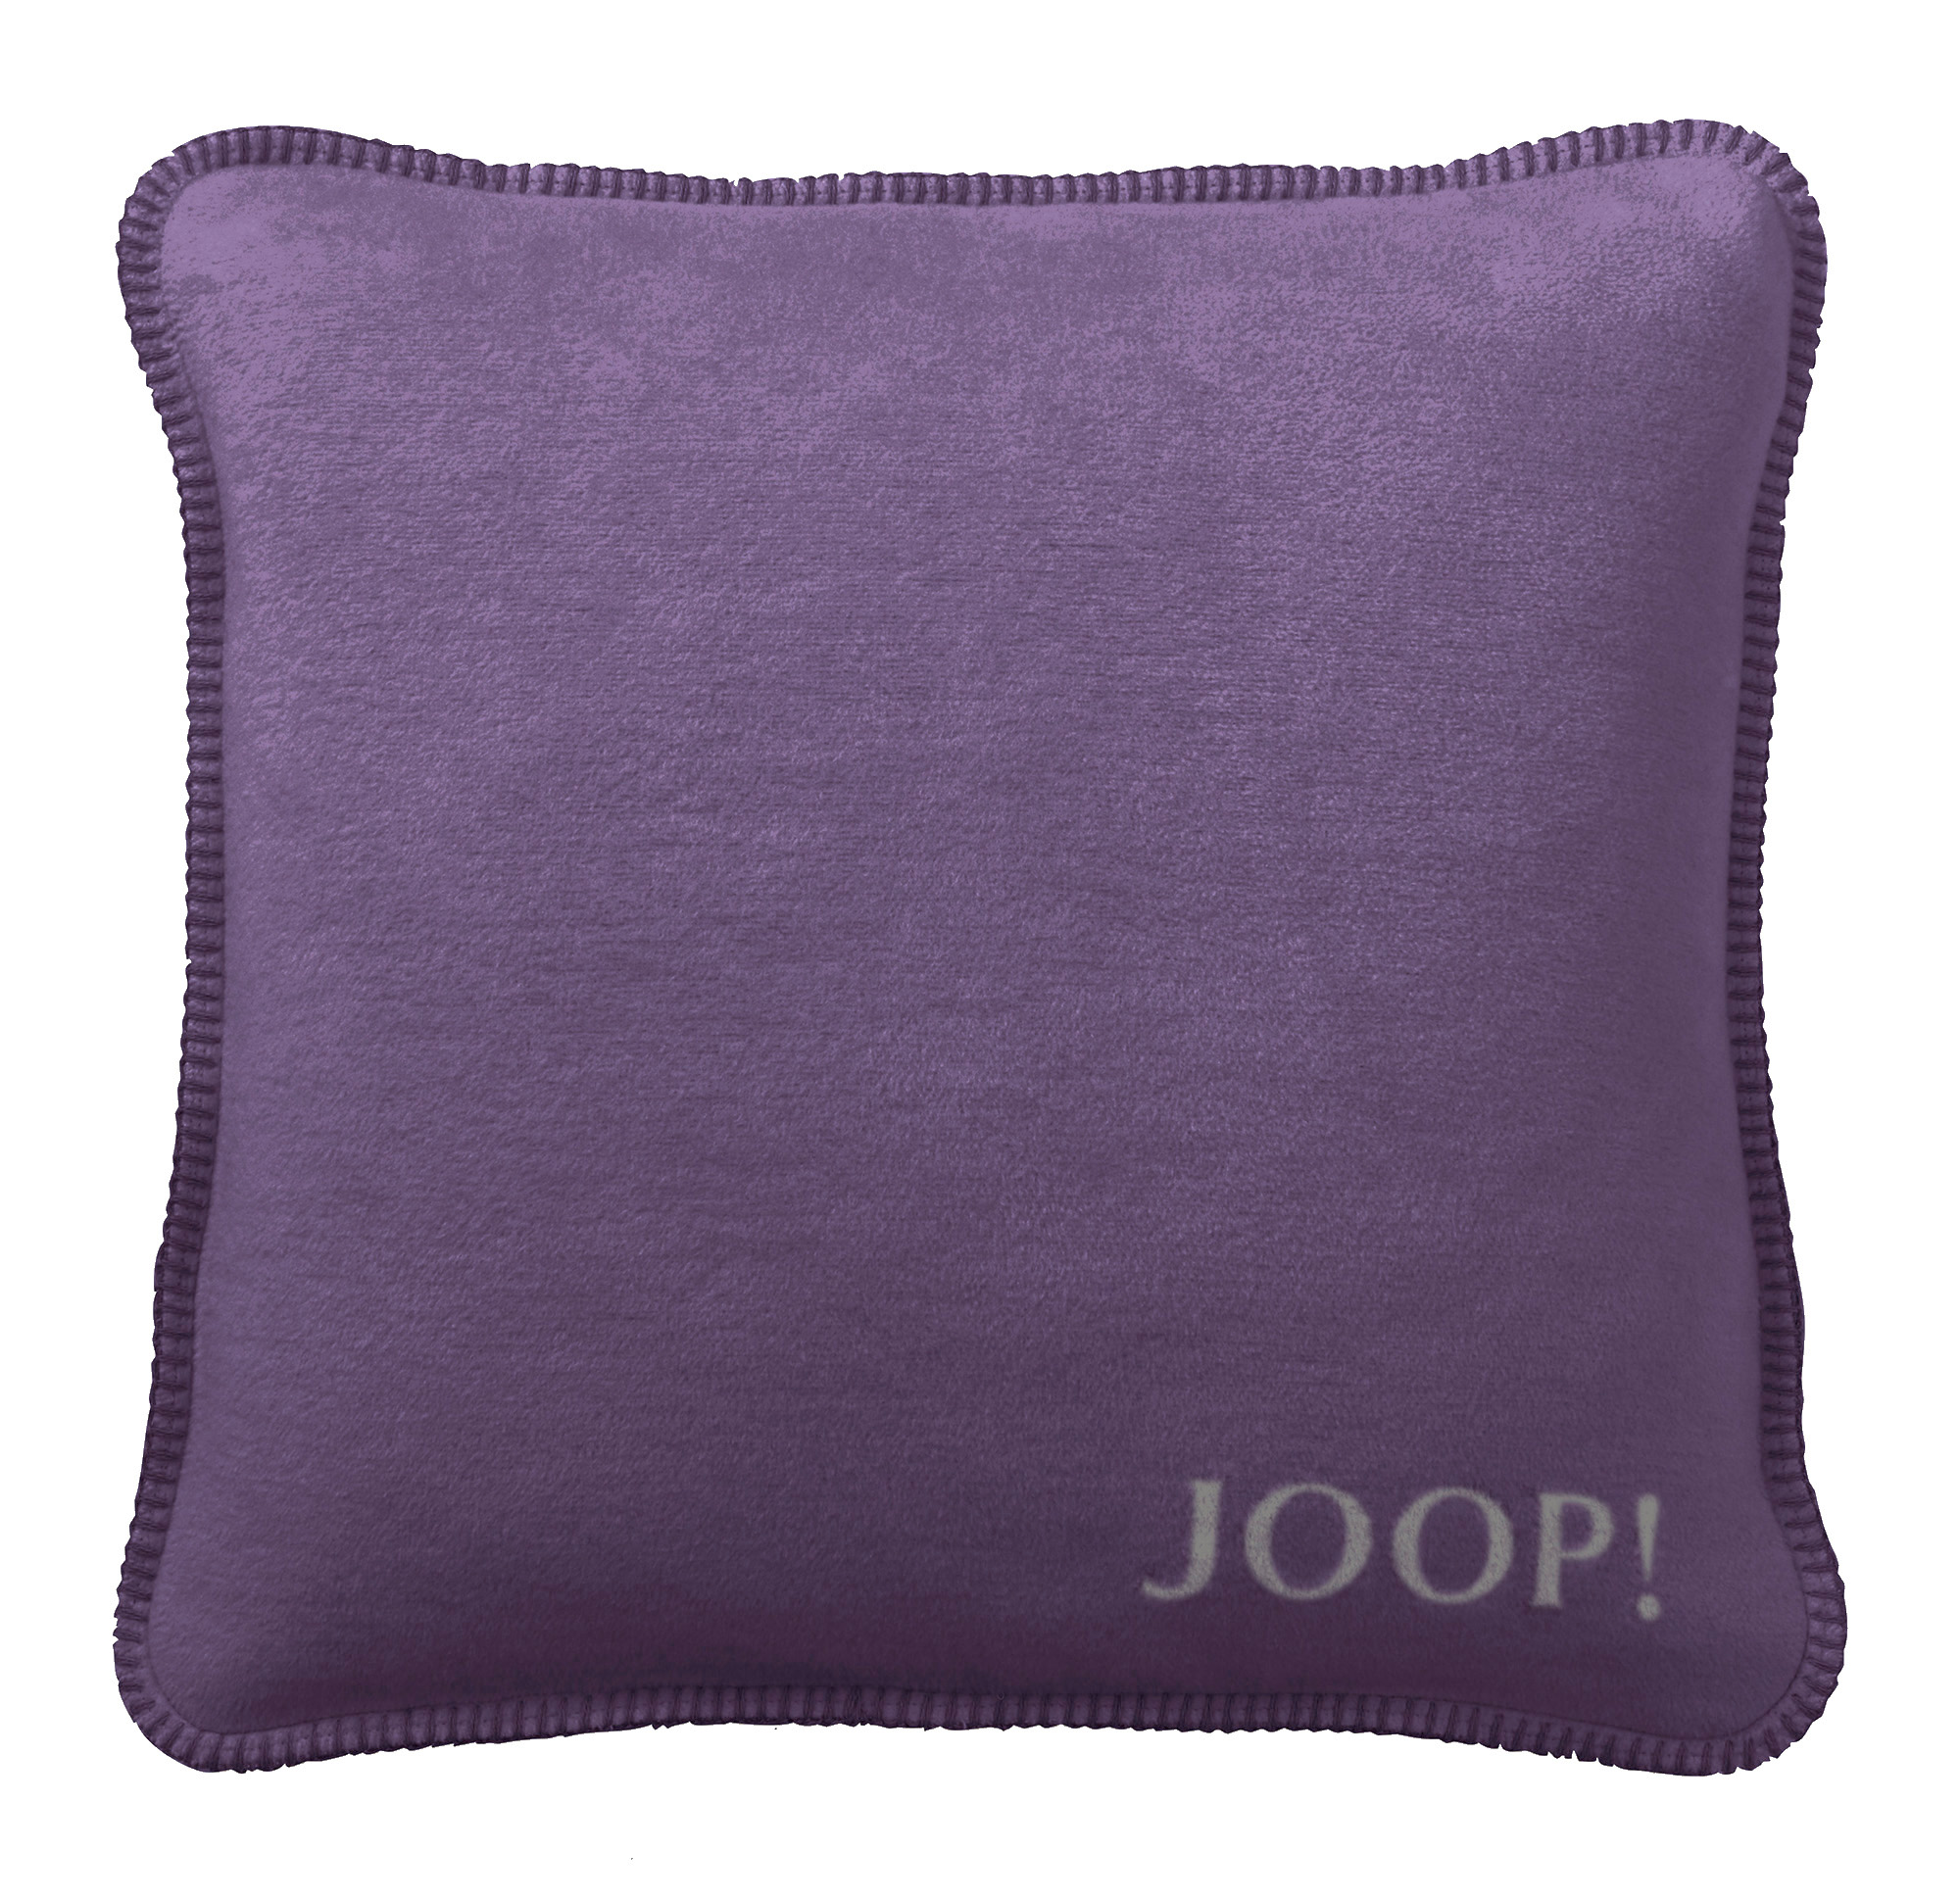 JOOP! Kissen Uni-Doubleface Violett-Schiefer